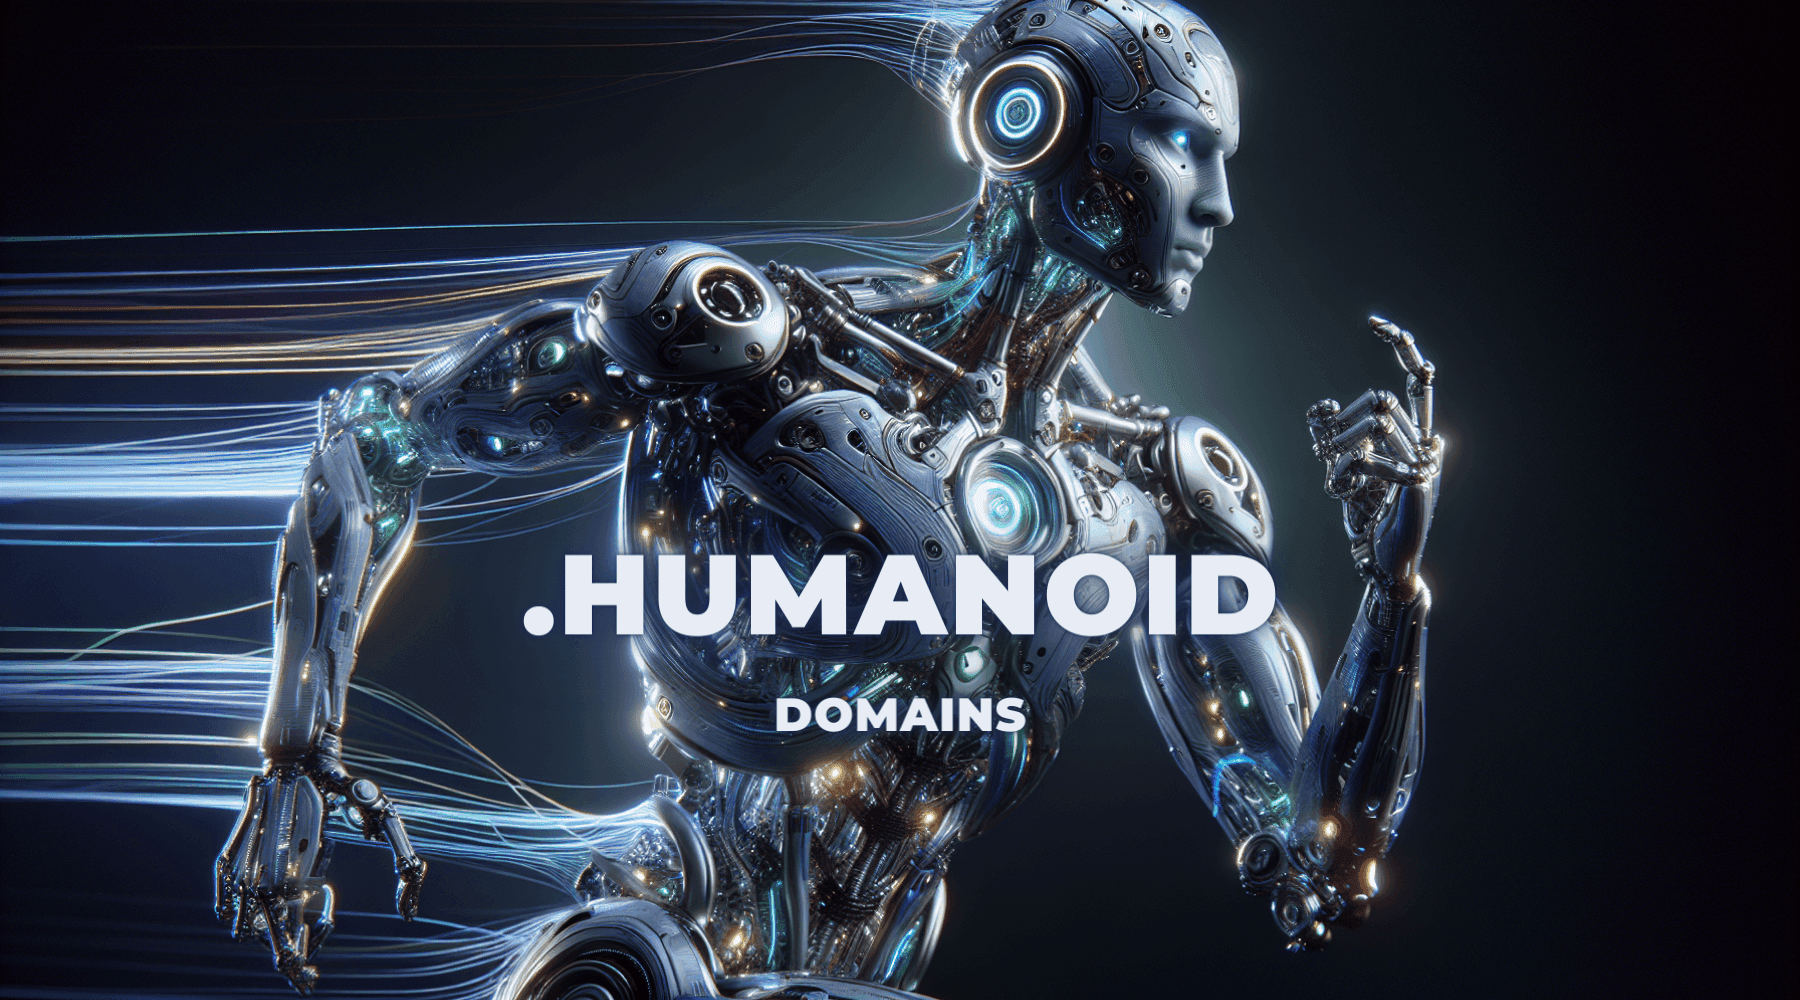 humanoid background image